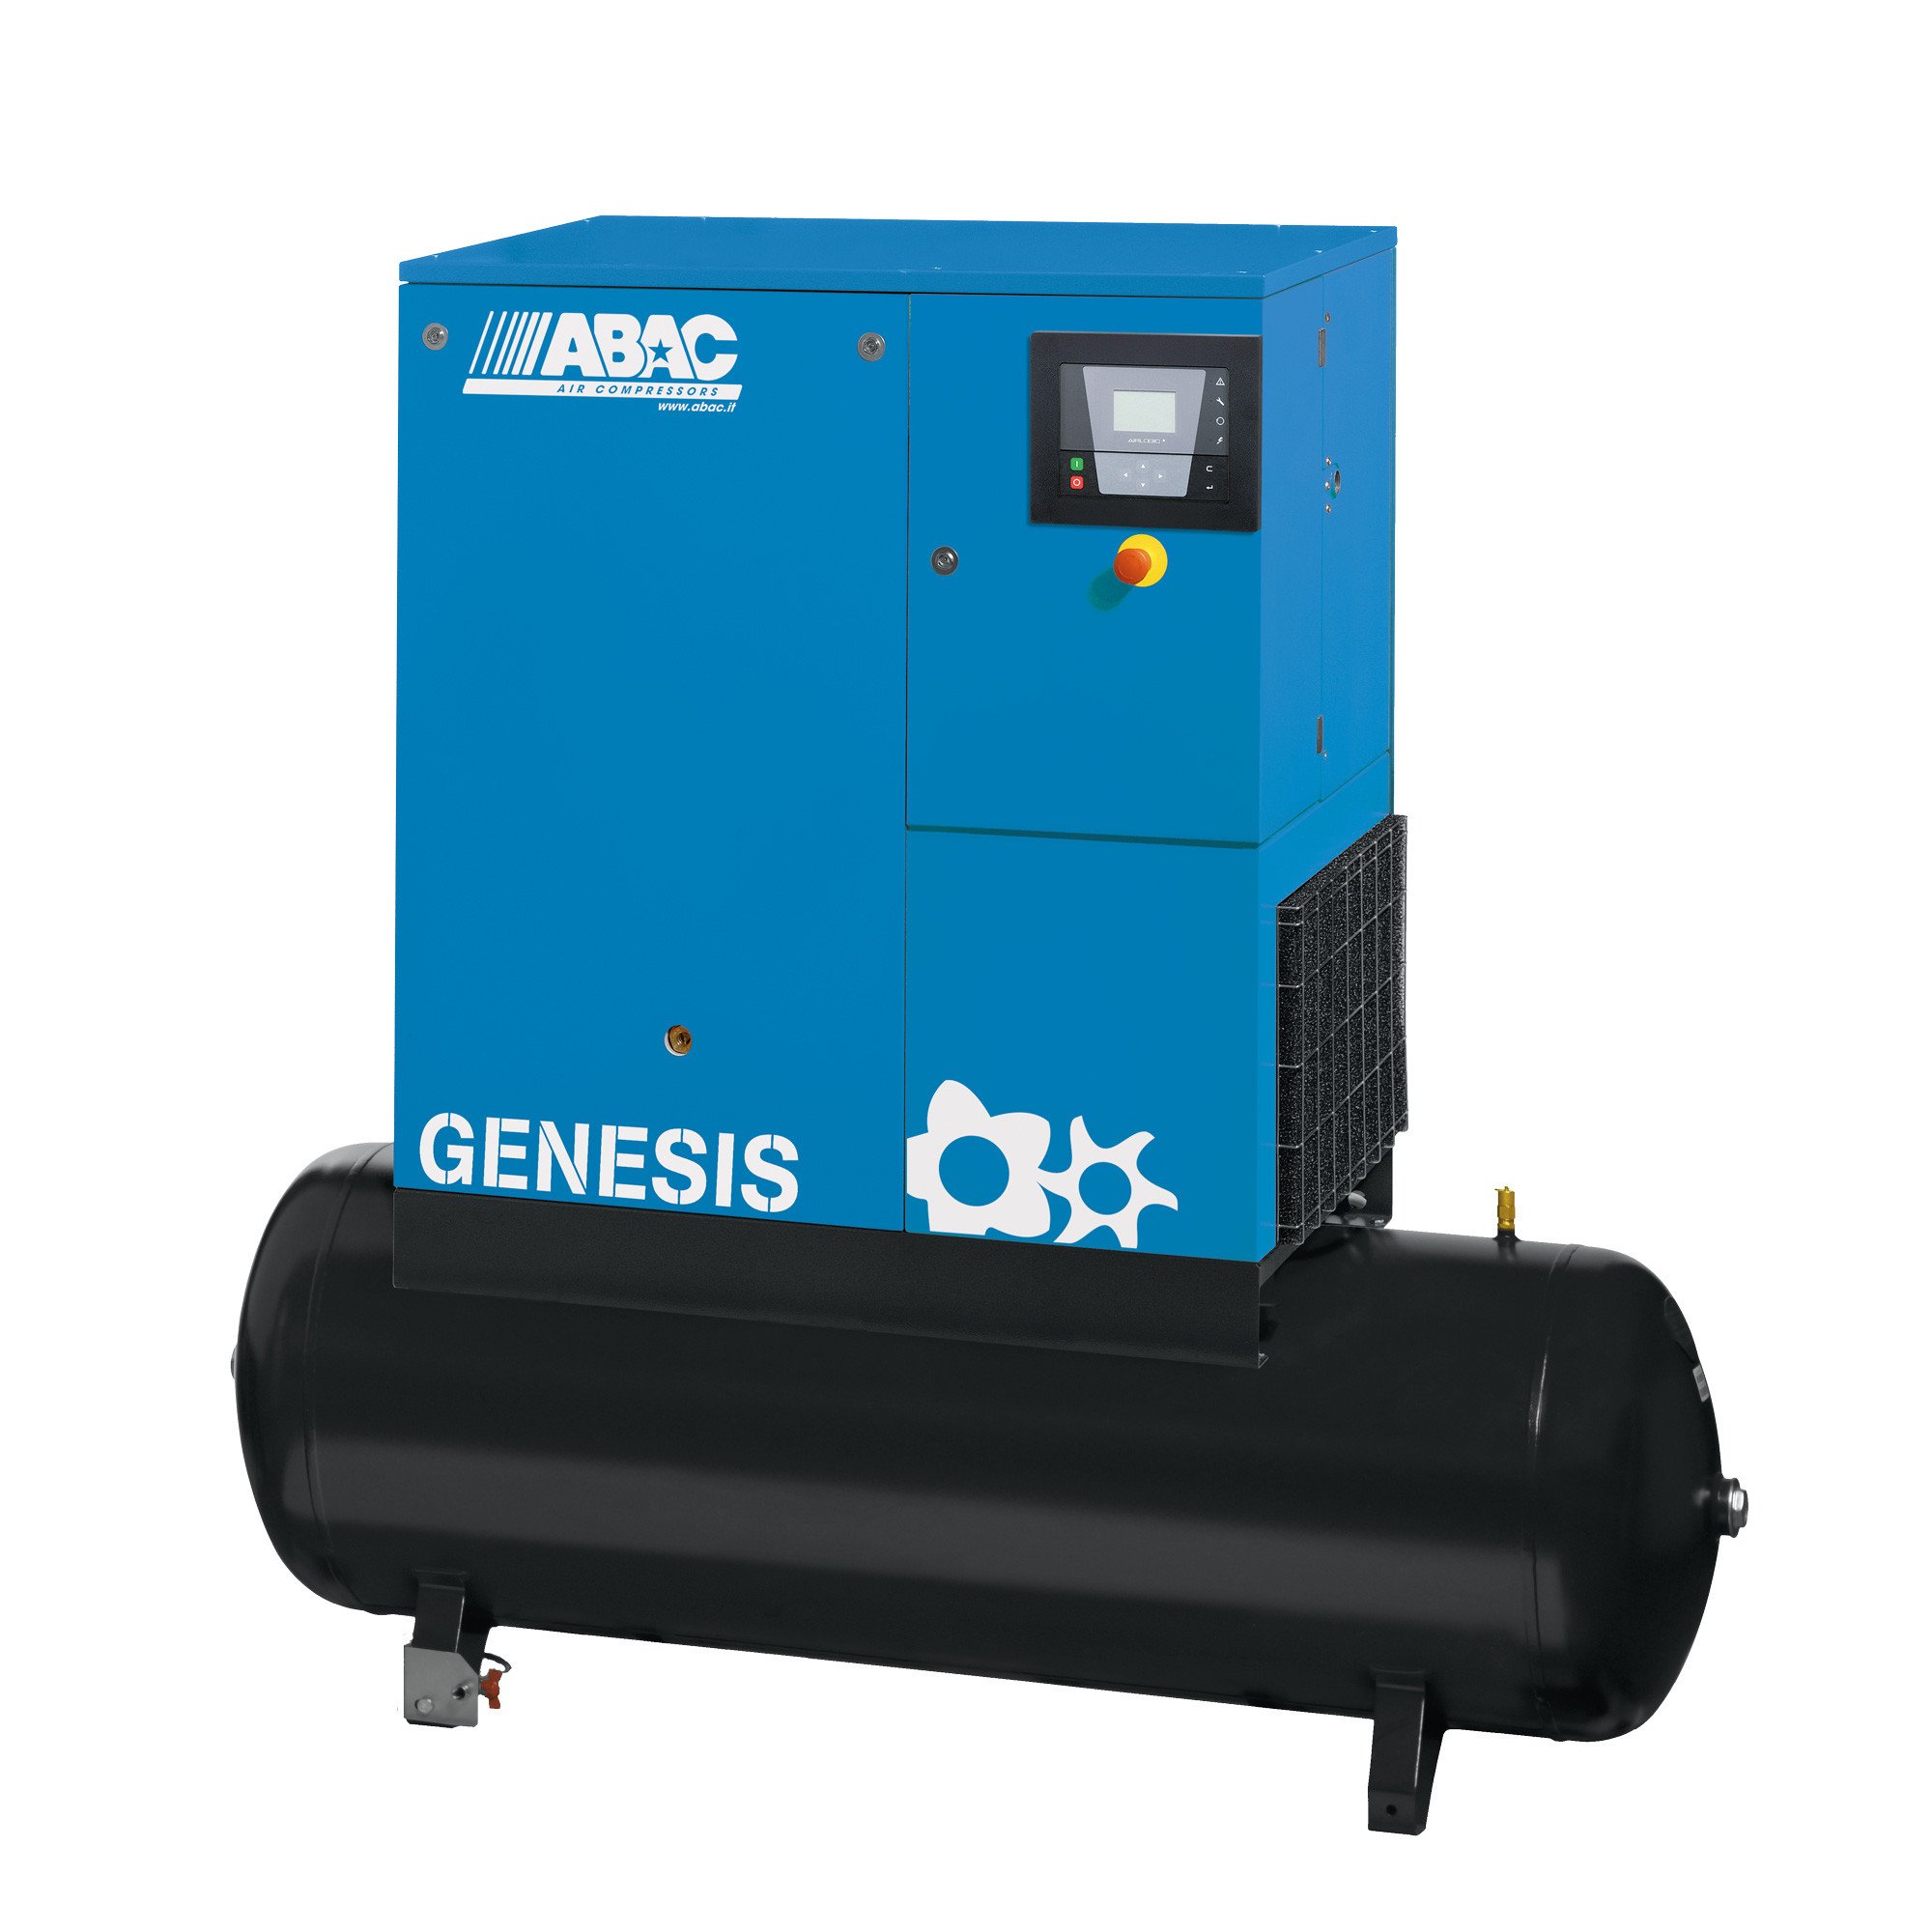 ABAC Genesis 500L, 42.4 CFM, 11 kW定速螺杆空压机